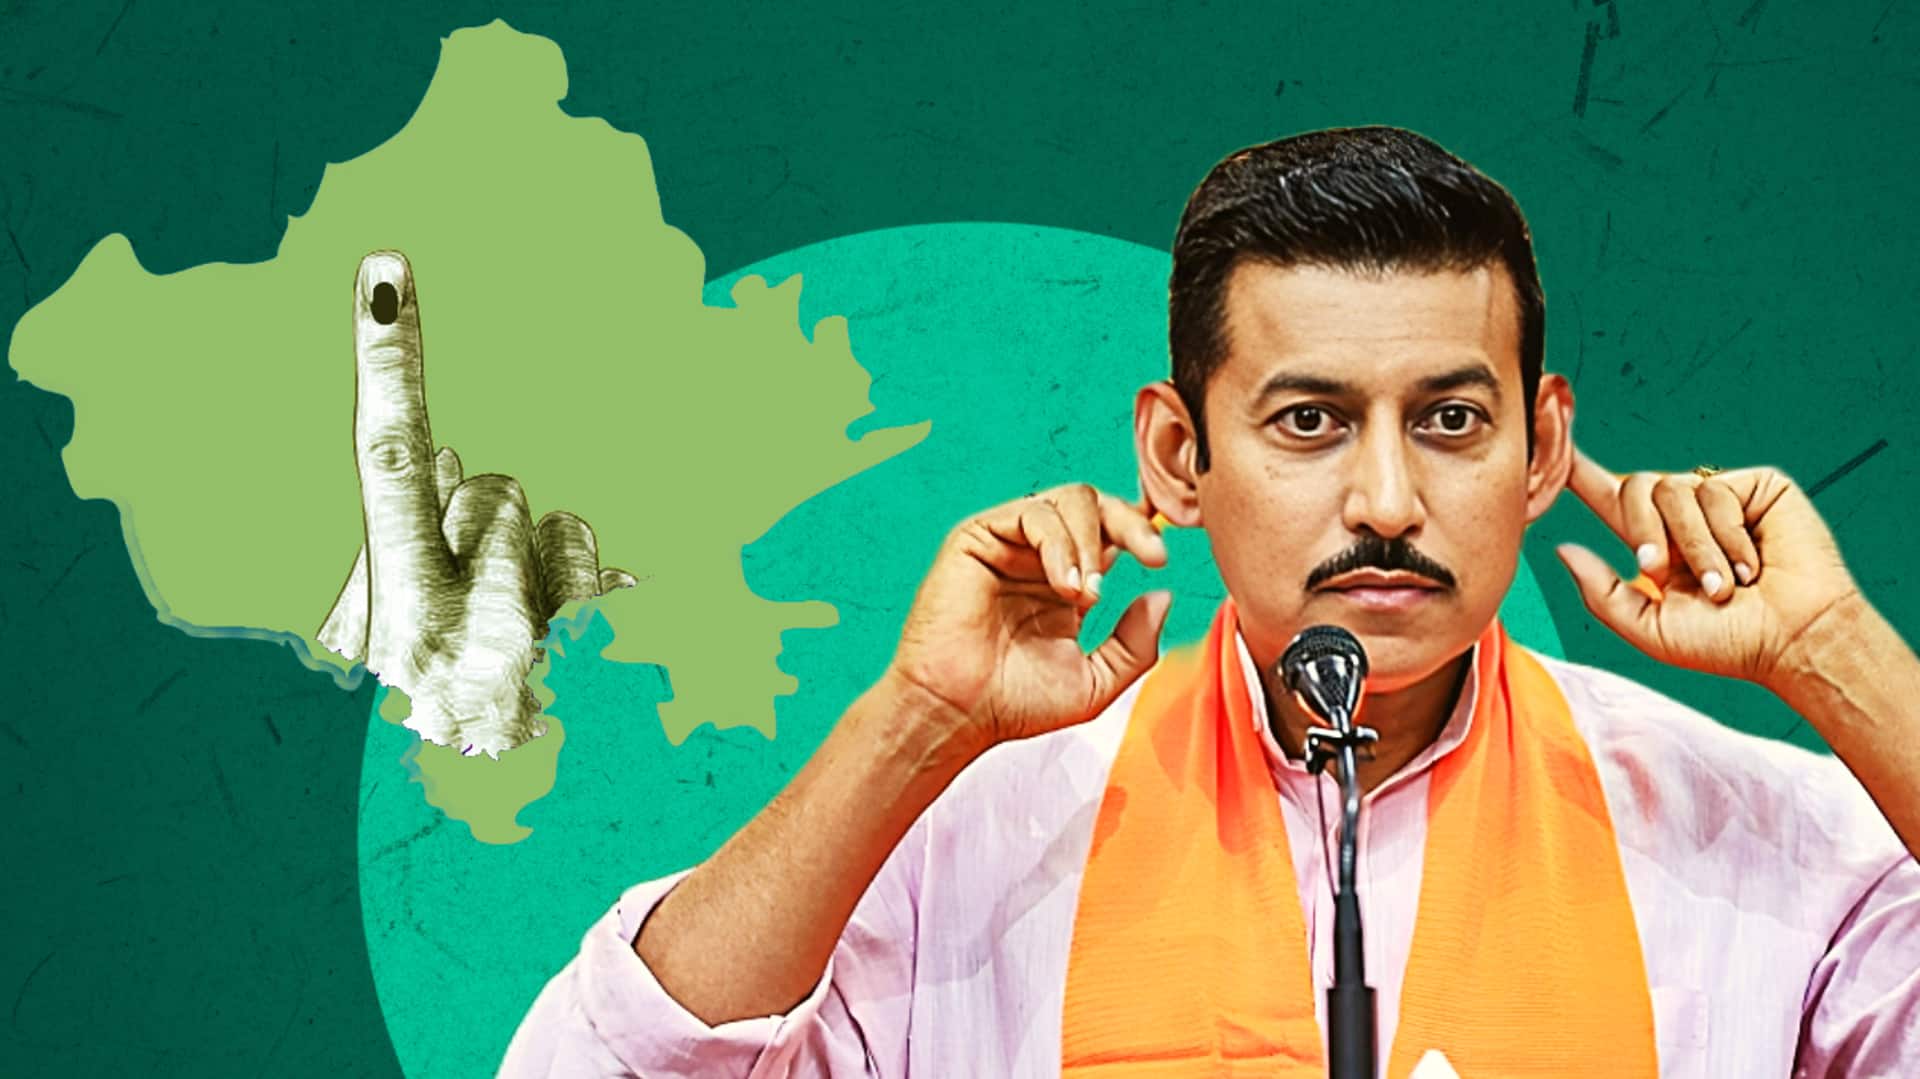 राजस्थान विधानसभा चुनाव: पूर्व केंद्रीय मंत्री राज्यवर्धन सिंह राठौर झोटवाड़ा सीट से जीते